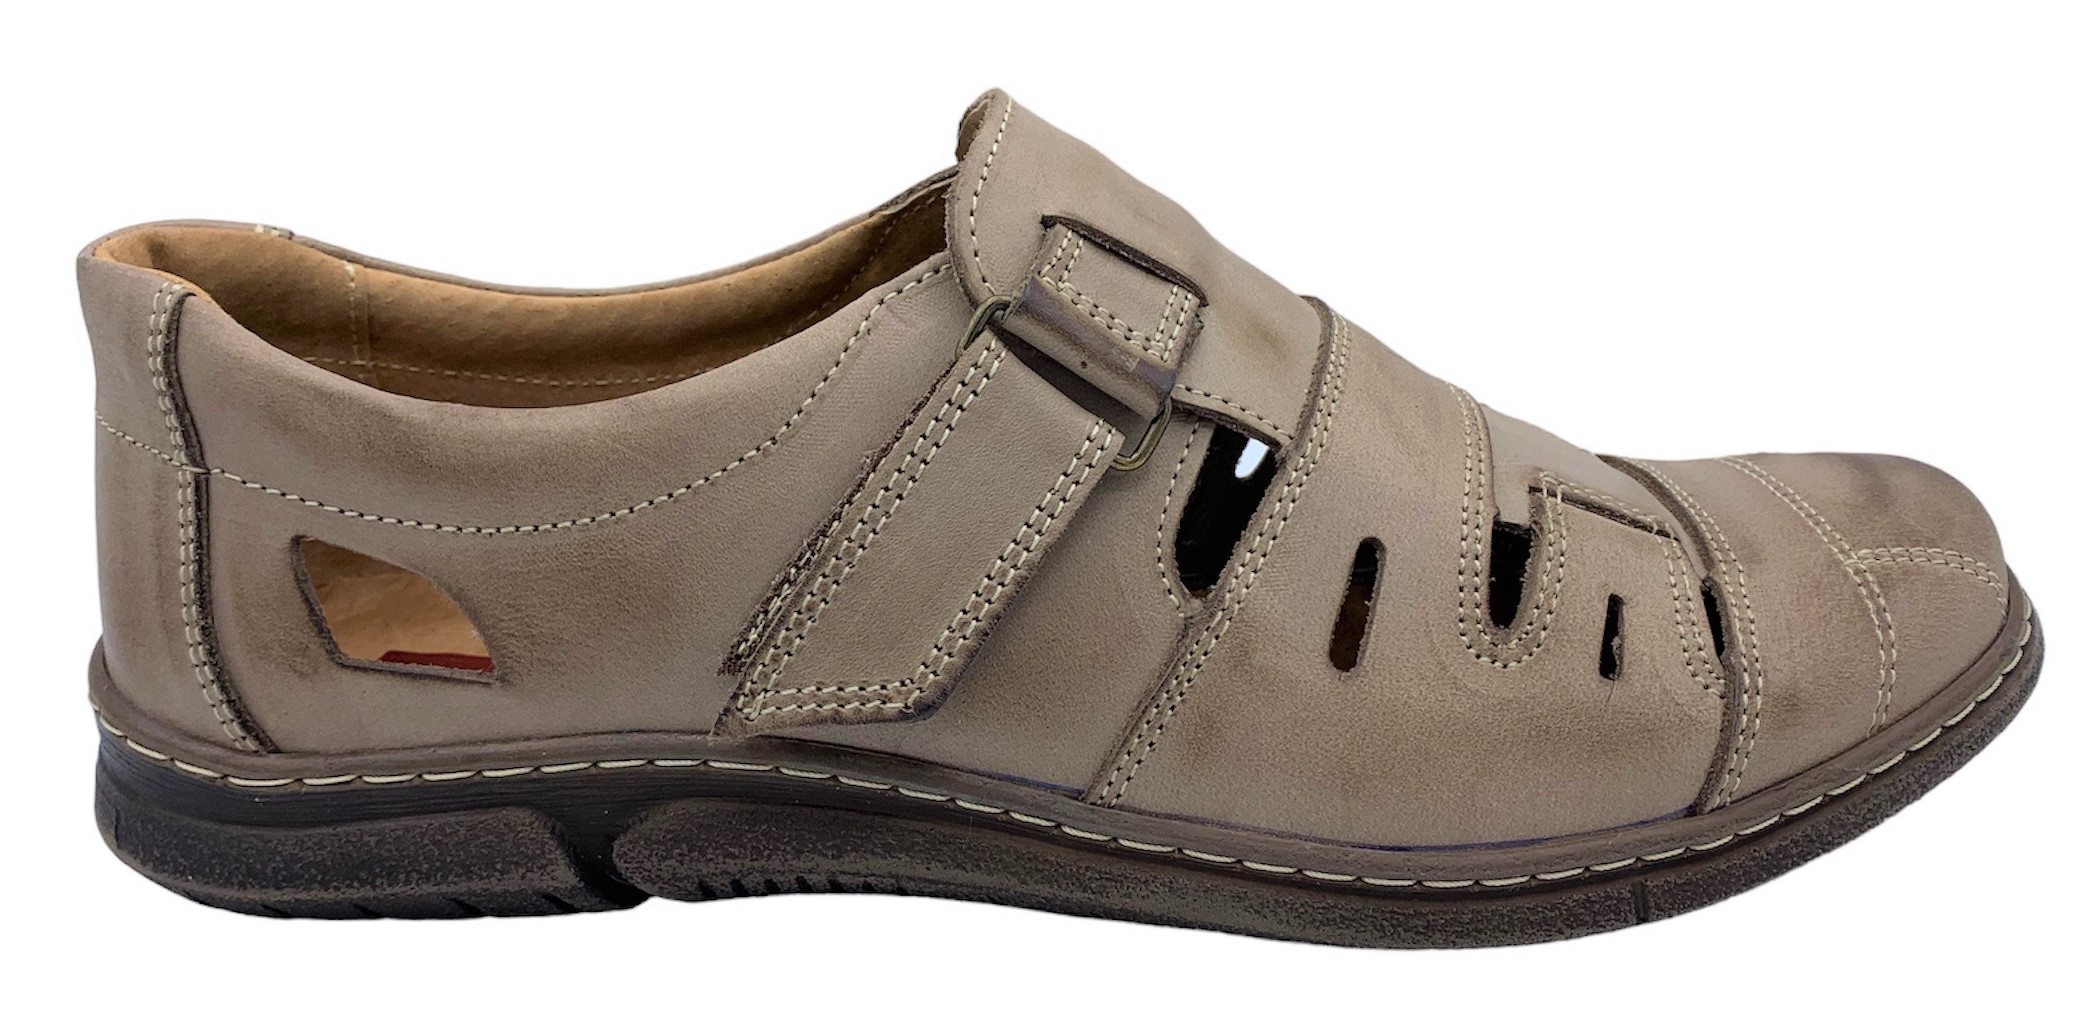 Pánská kožené sandále NES 4617 hnědé Velikost: 45 (EU)